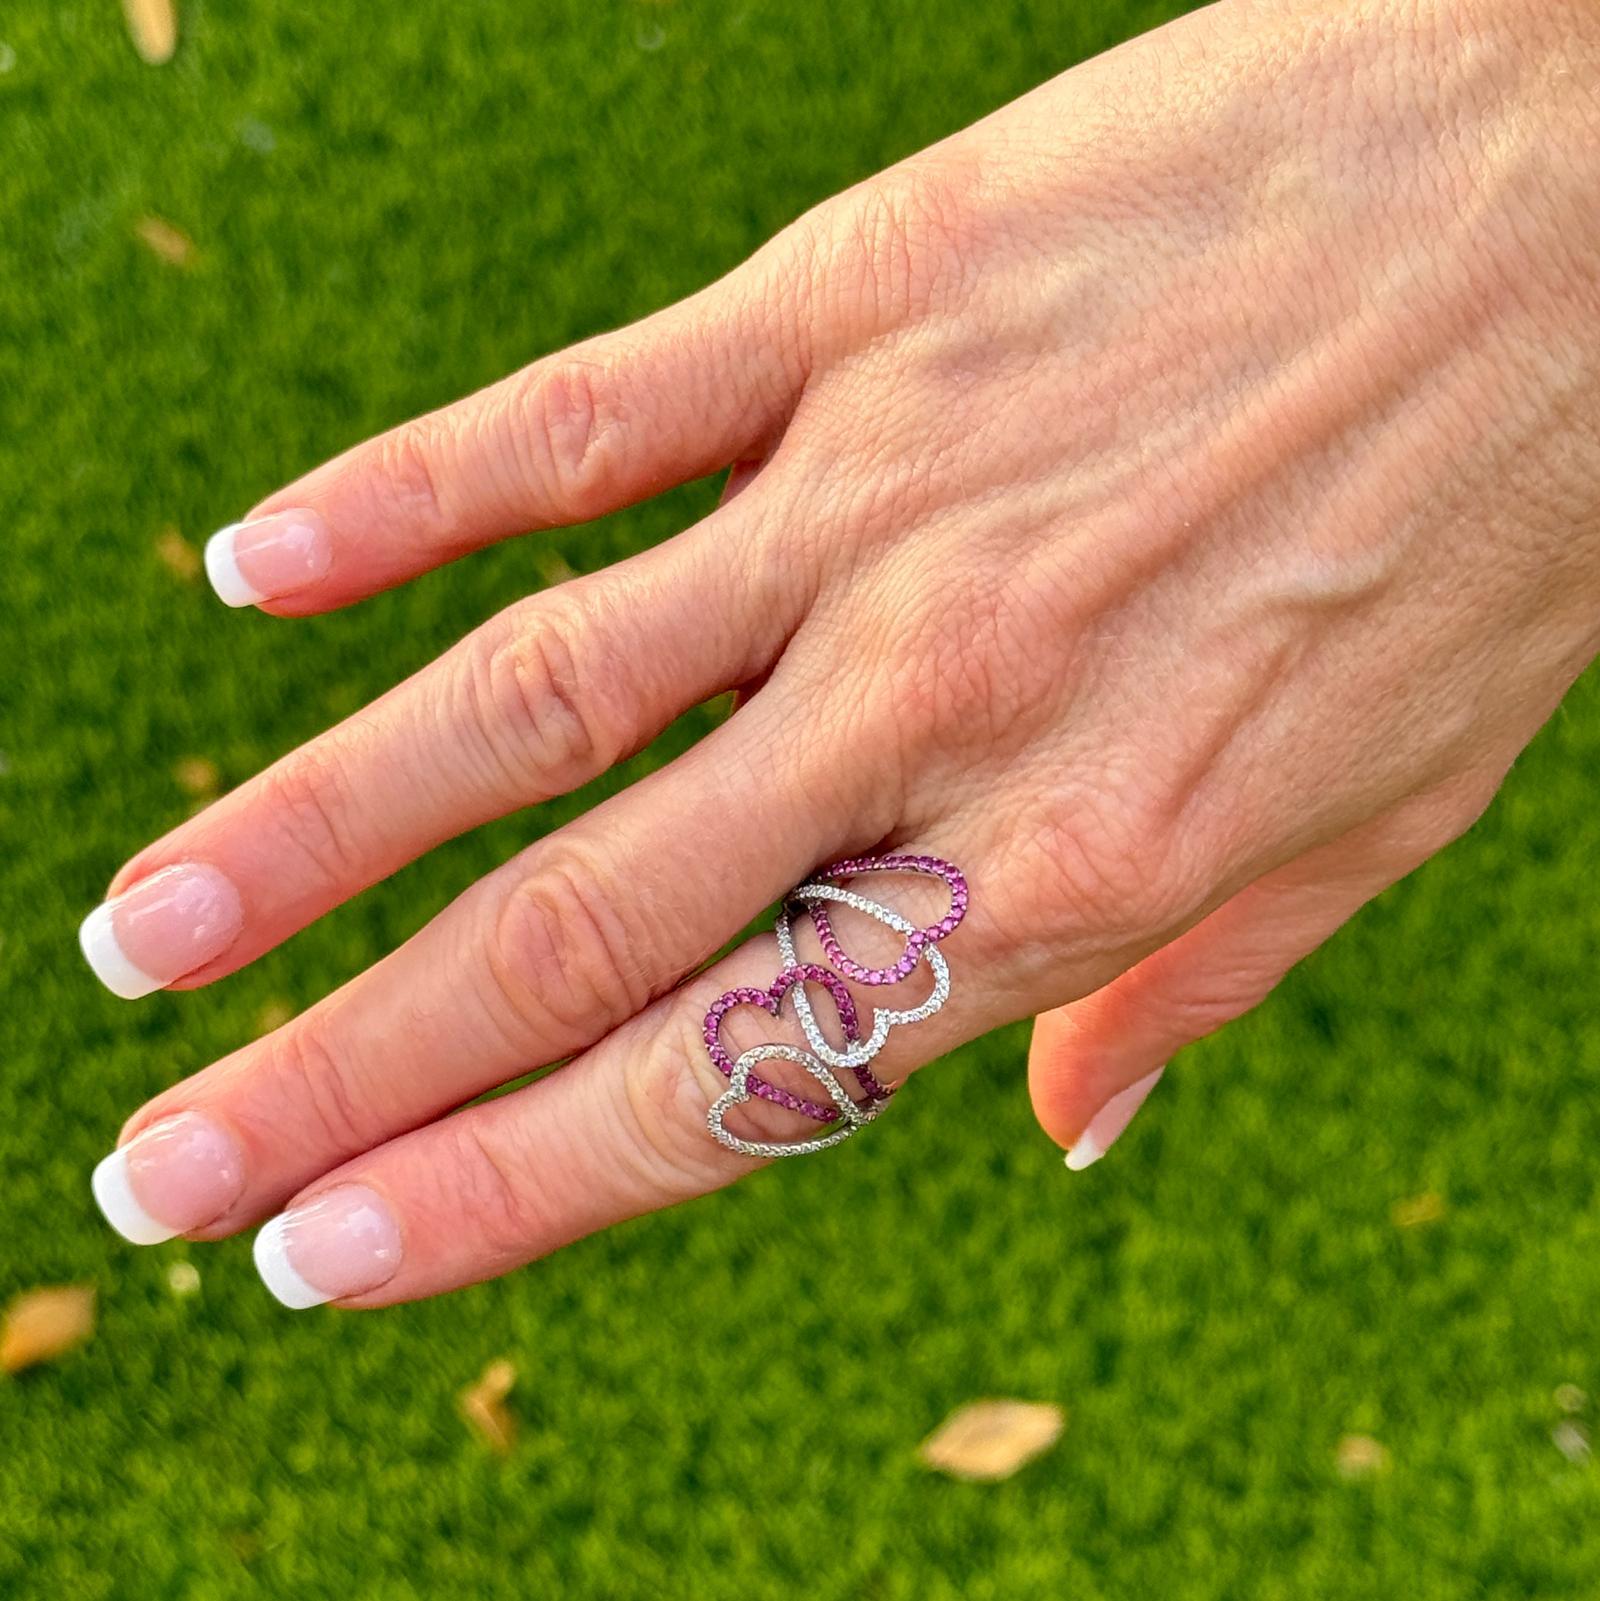 Moderner Diamant-Rubin-Ring mit offenem Herzen, gefertigt aus 18 Karat Weißgold. Der Ring enthält 94 runde Diamanten im Brillantschliff mit einem Gesamtgewicht von etwa 0,65 Karat und runde Rubine. Die Diamanten sind von der Farbe H-I und der